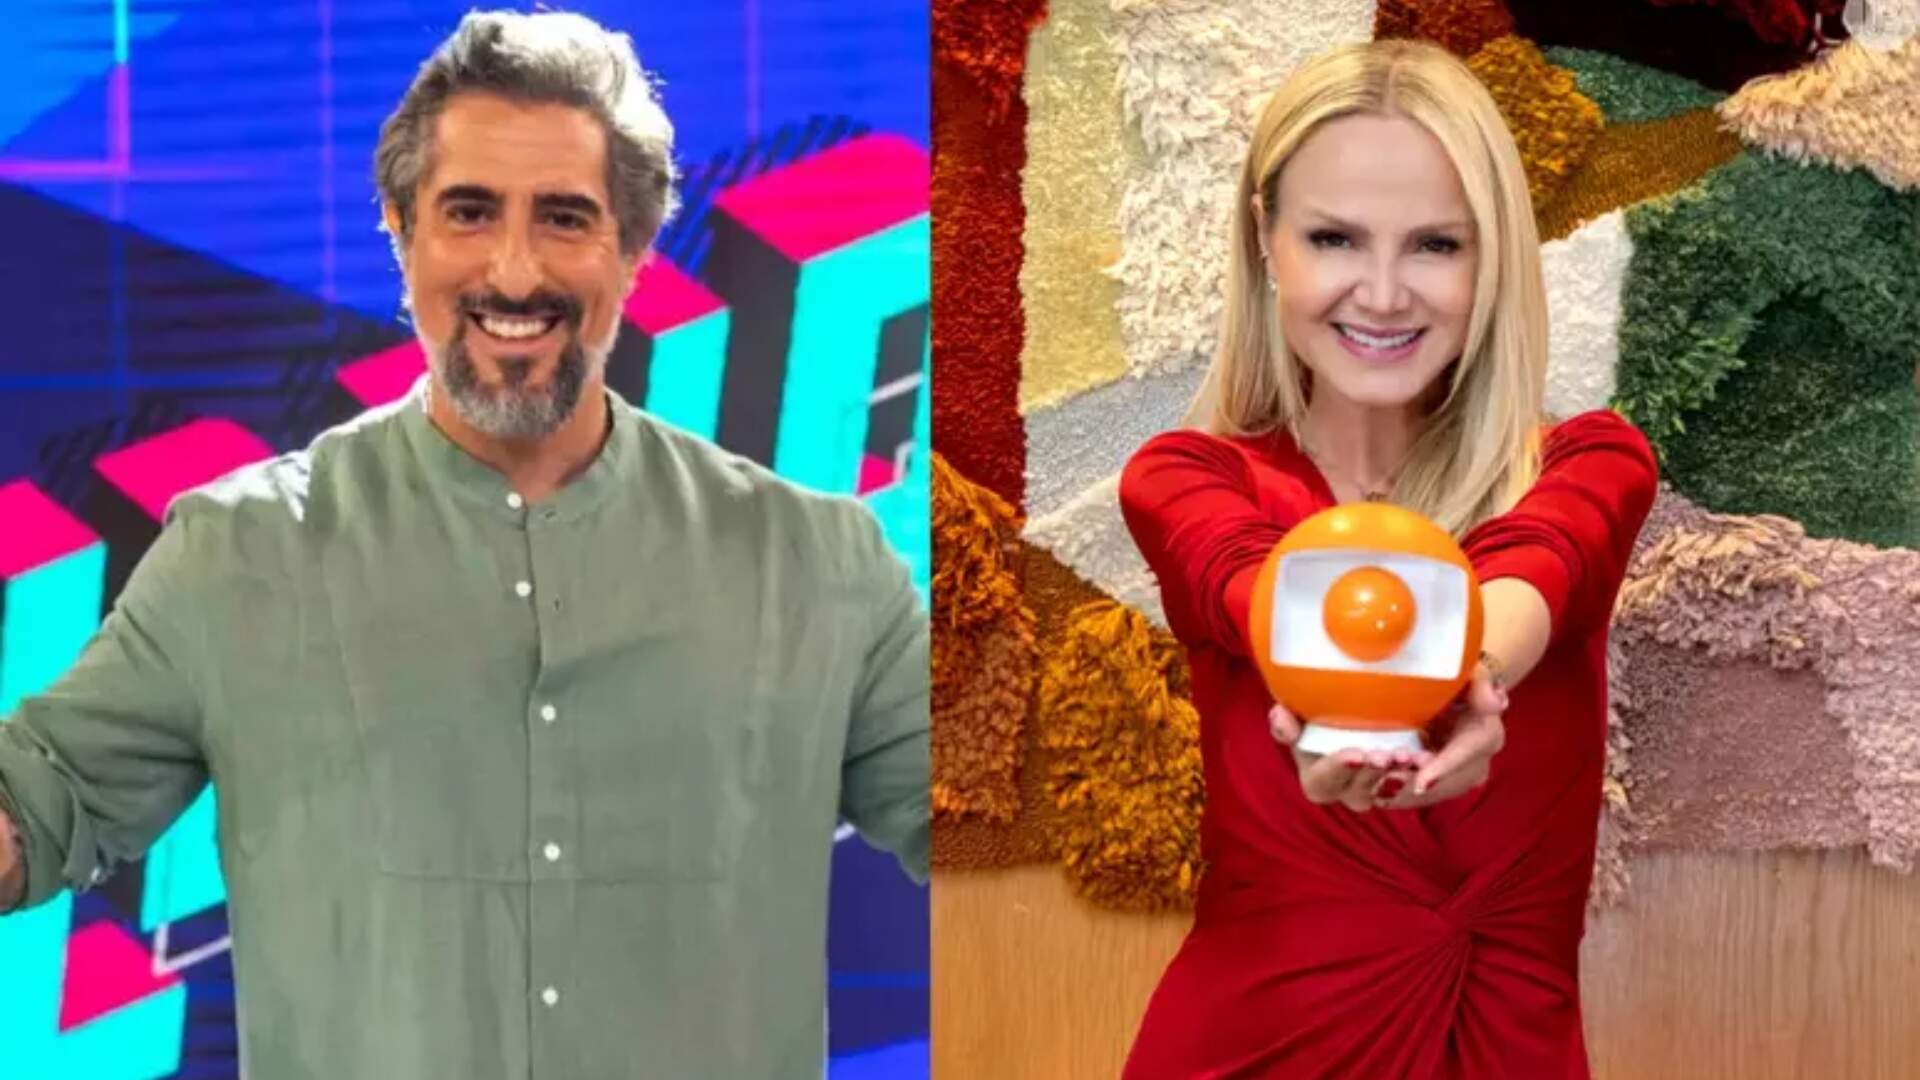 Marcos Mion comemora contratação de Eliana pela Globo e expõe conversas: “Eu sempre falei” - Metropolitana FM